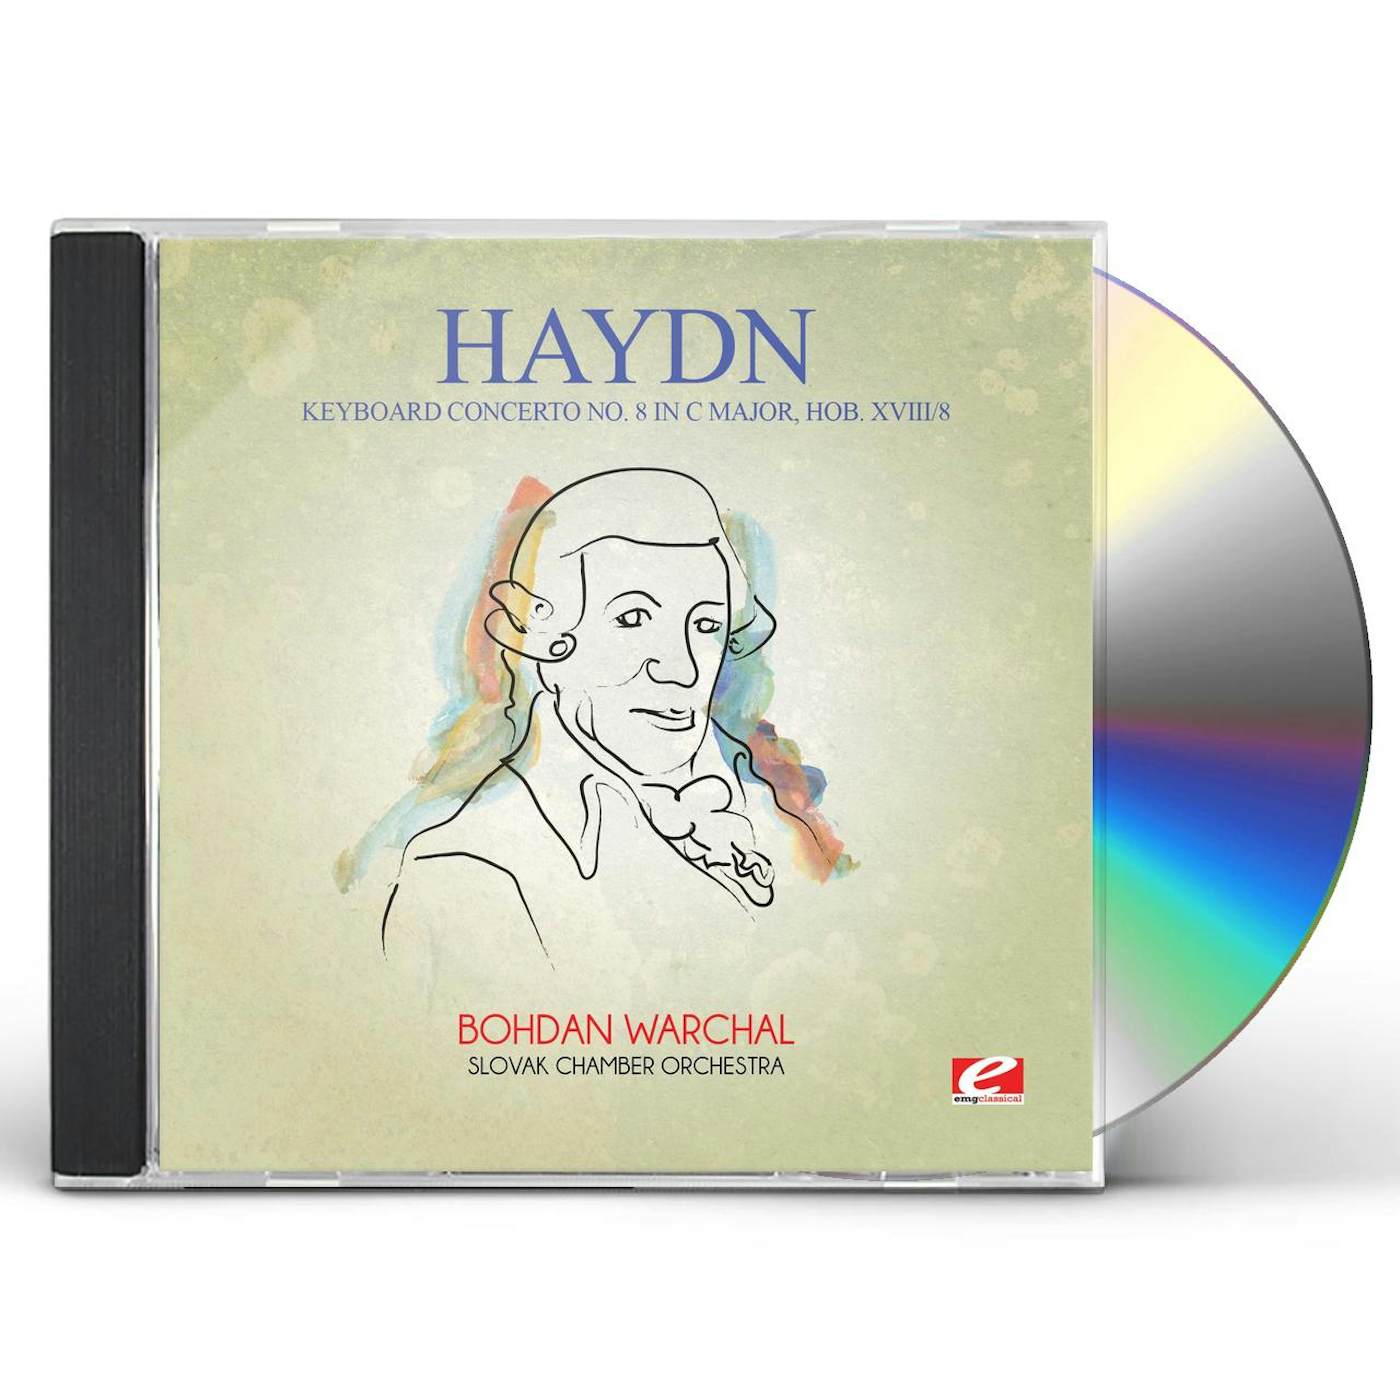 Haydn KEYBOARD CONCERTO 8 IN C MAJOR HOB XVIII 8 CD